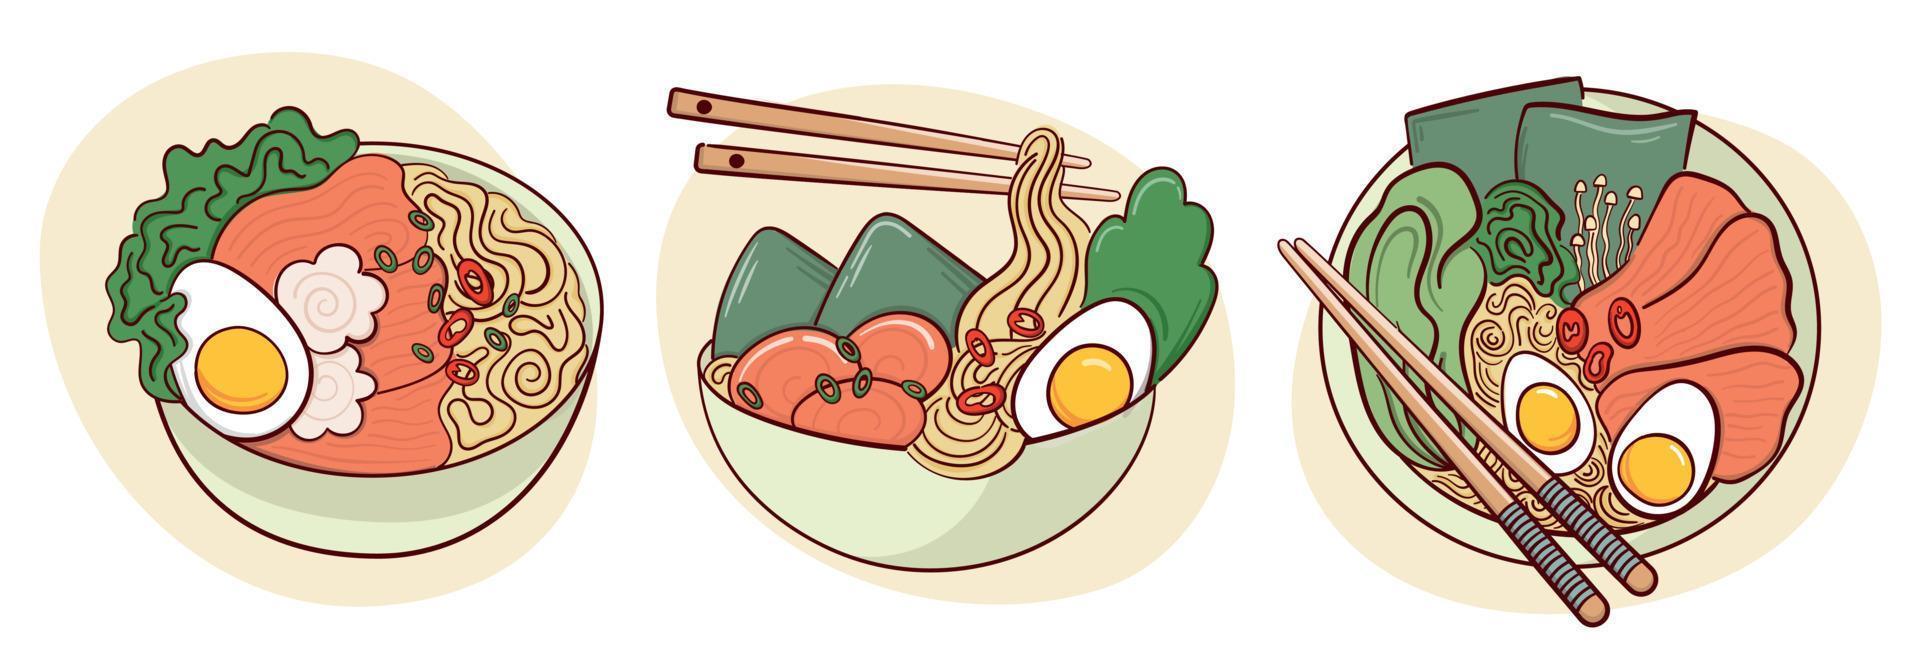 dibujar sopa de ramen en una ilustración de vector de tazón. comida tradicional asiática japonesa, cocina, concepto de menú. estilo de dibujos animados de fideos.